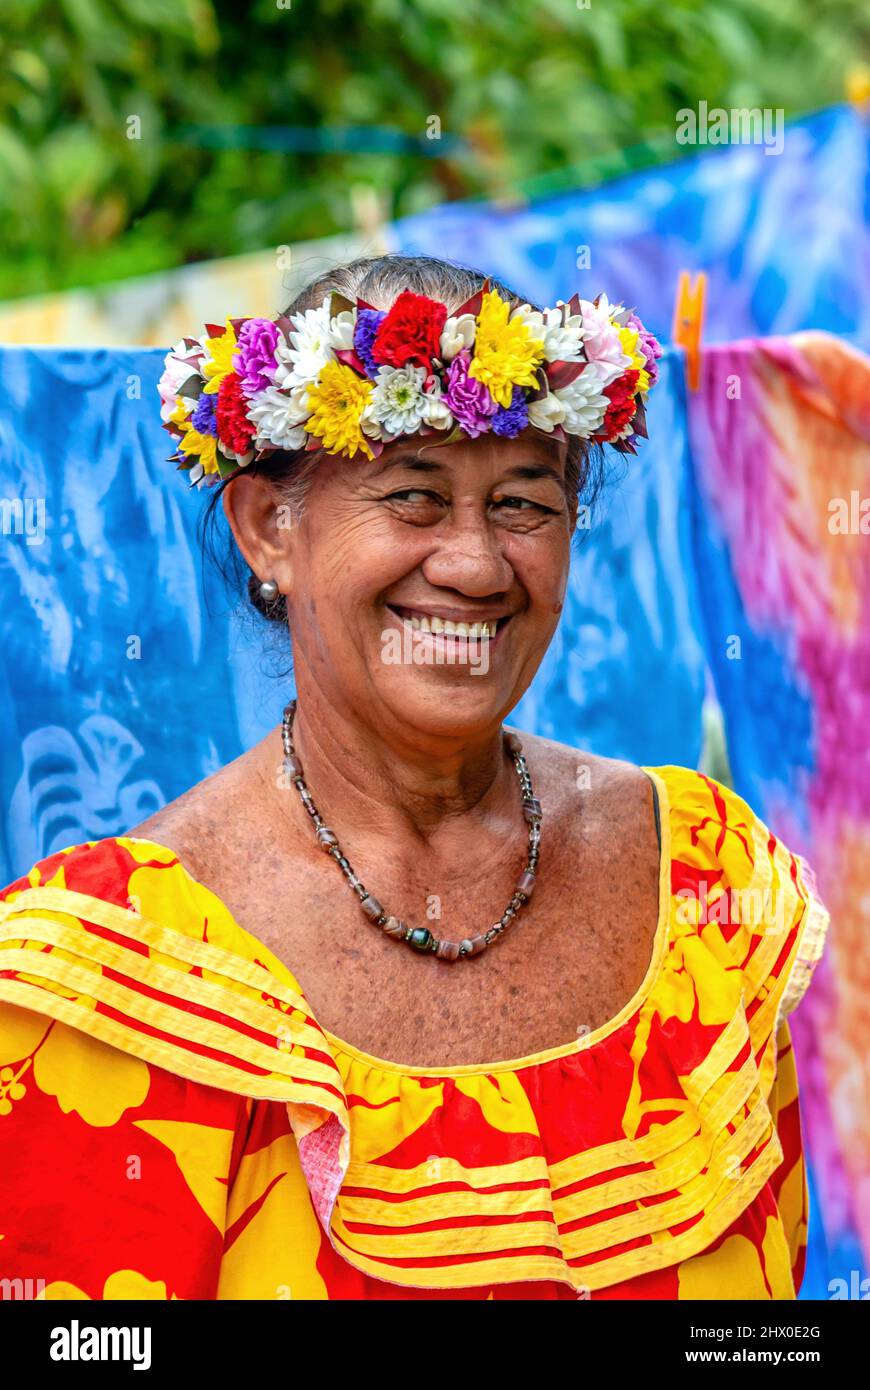 Polynesian woman with flower hair decoration in Bora Bora, French Polynesia. Stock Photo